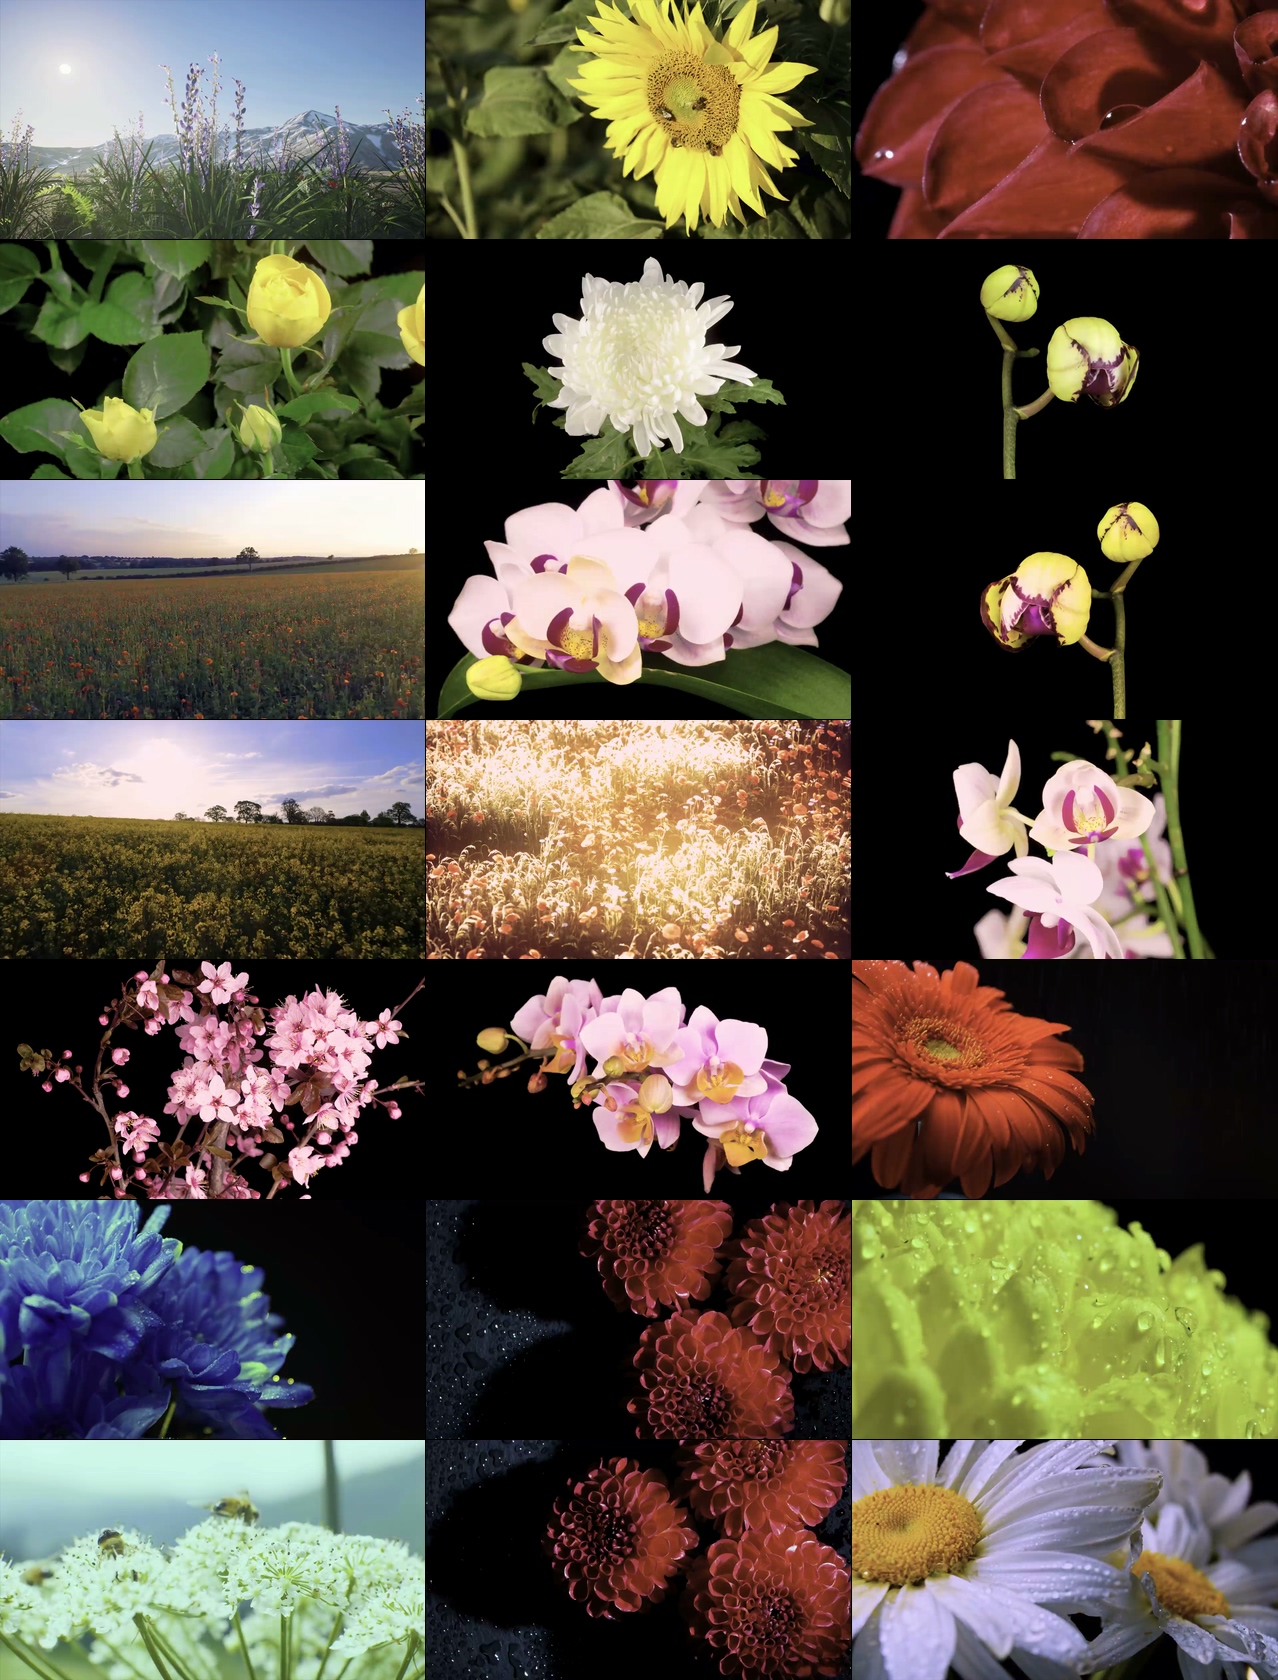 8K视频素材最美丽的花朵盛开视频素材系列纪录片